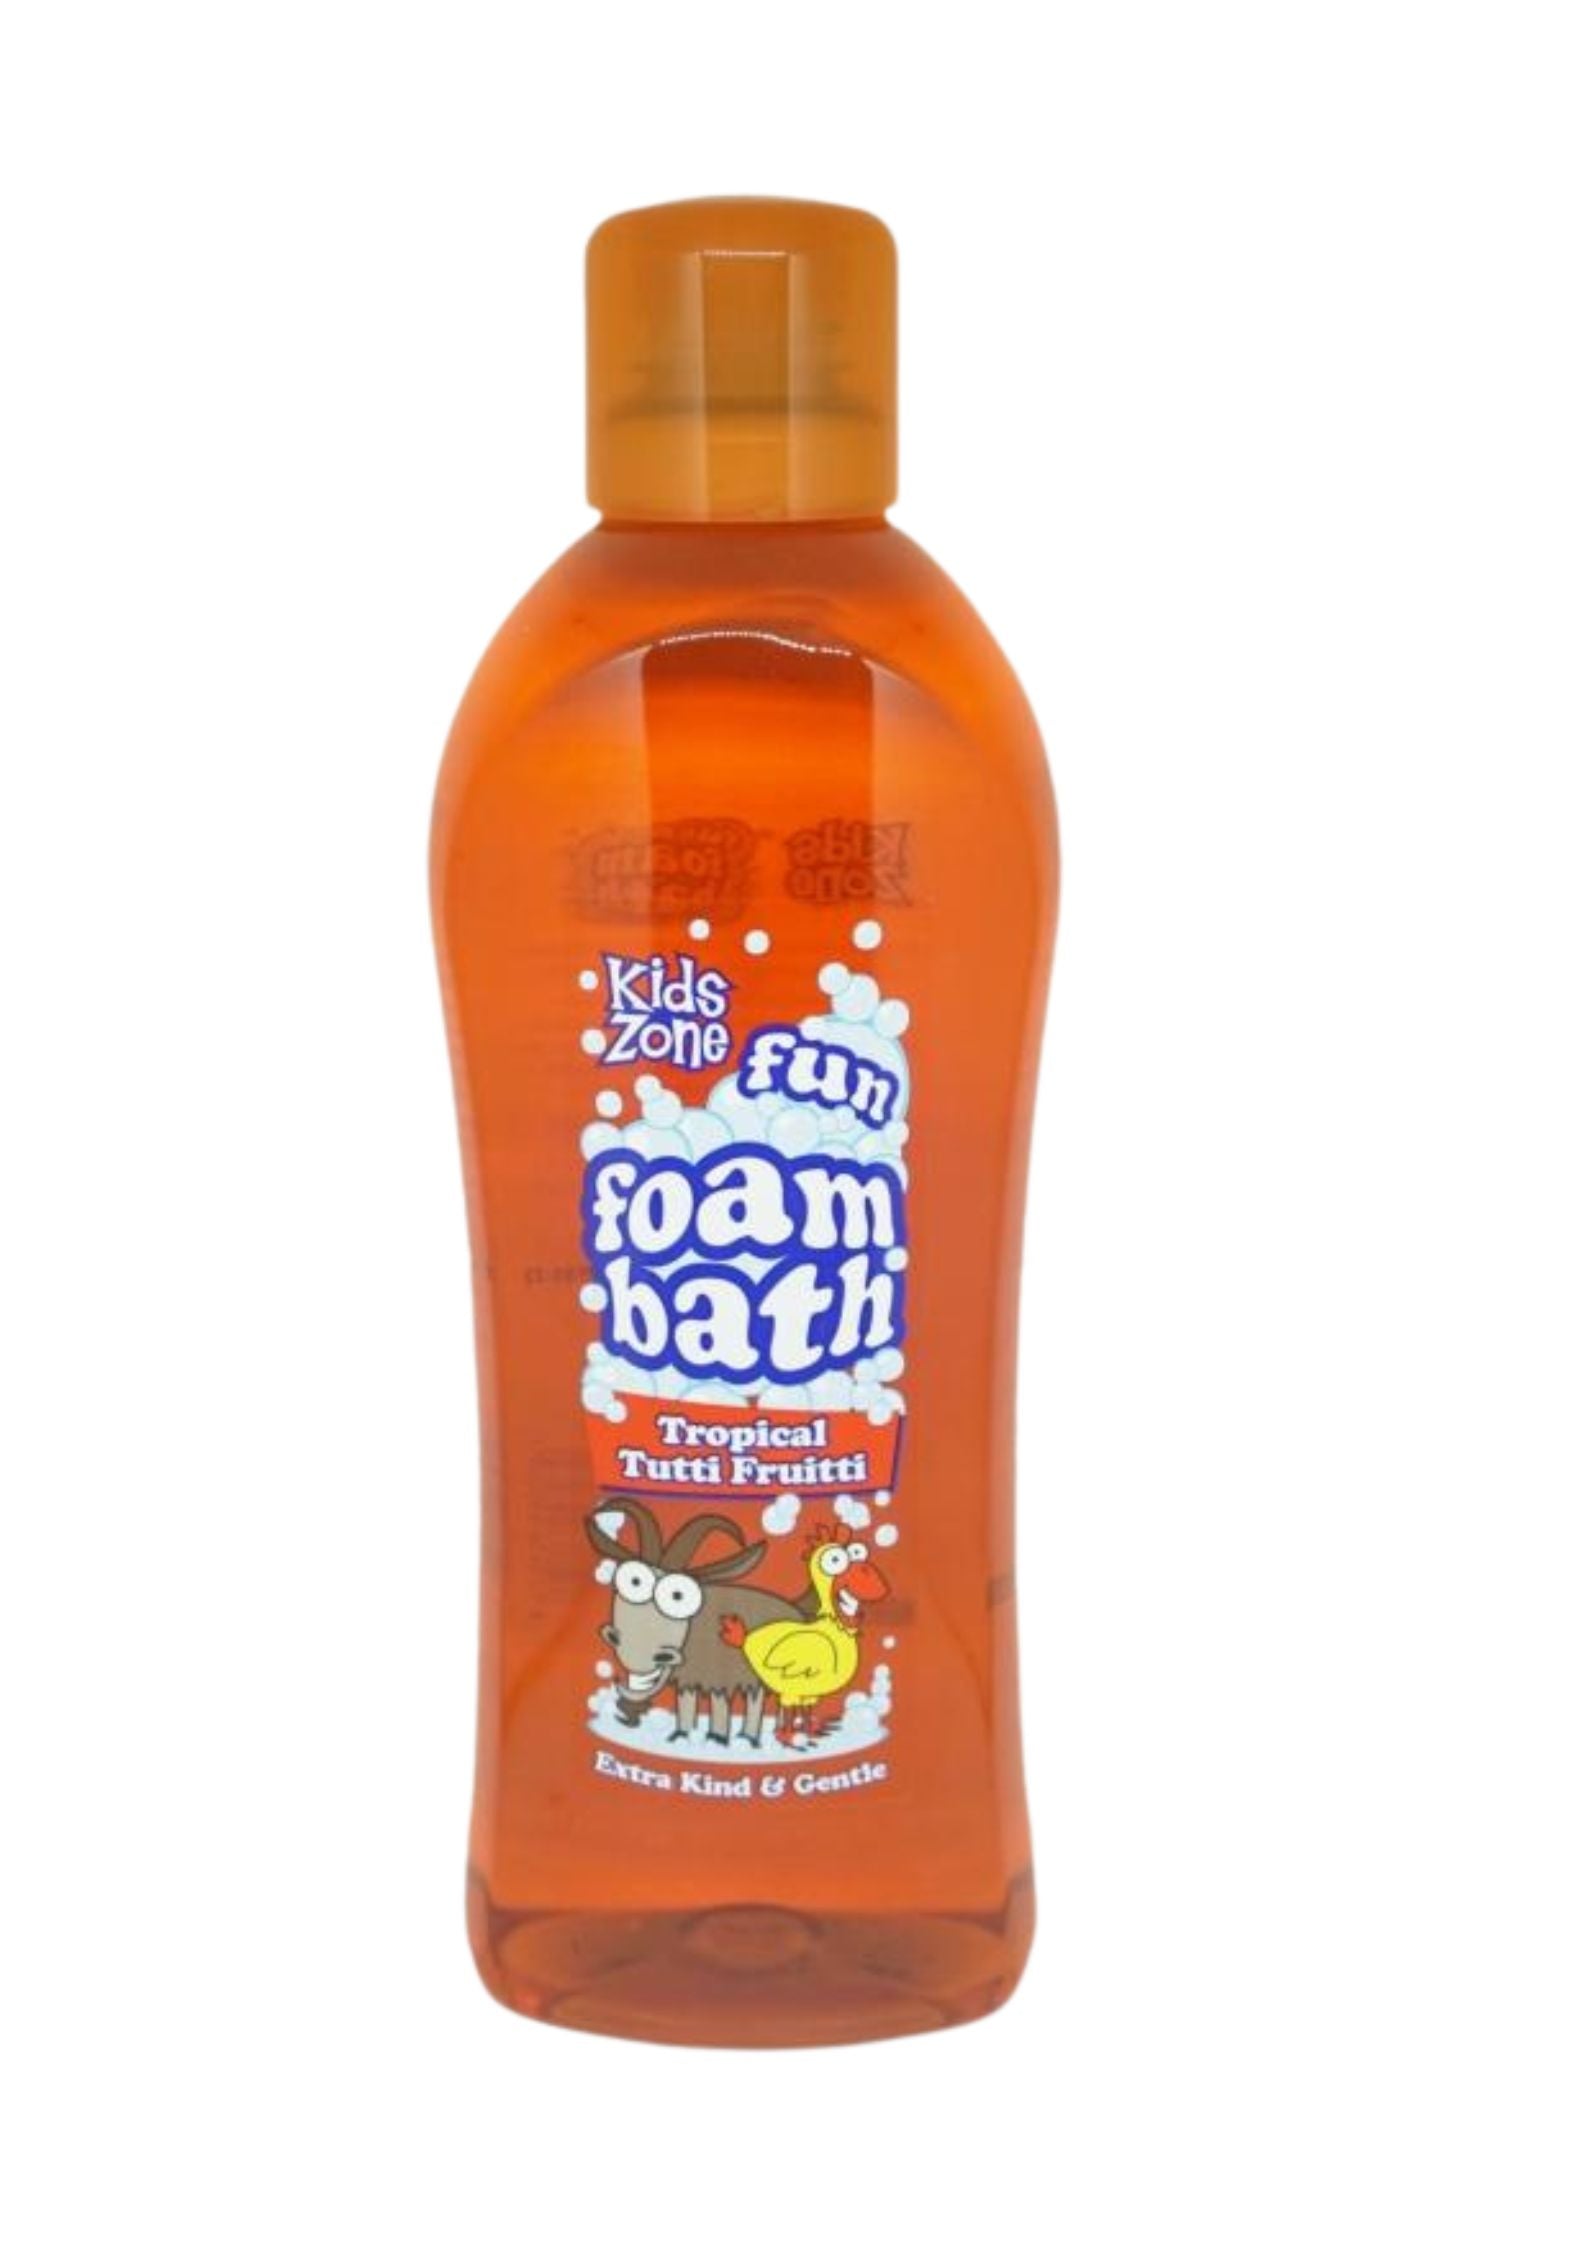 Kids Zone Foam Bath Tropical Tutti Frutti 1L